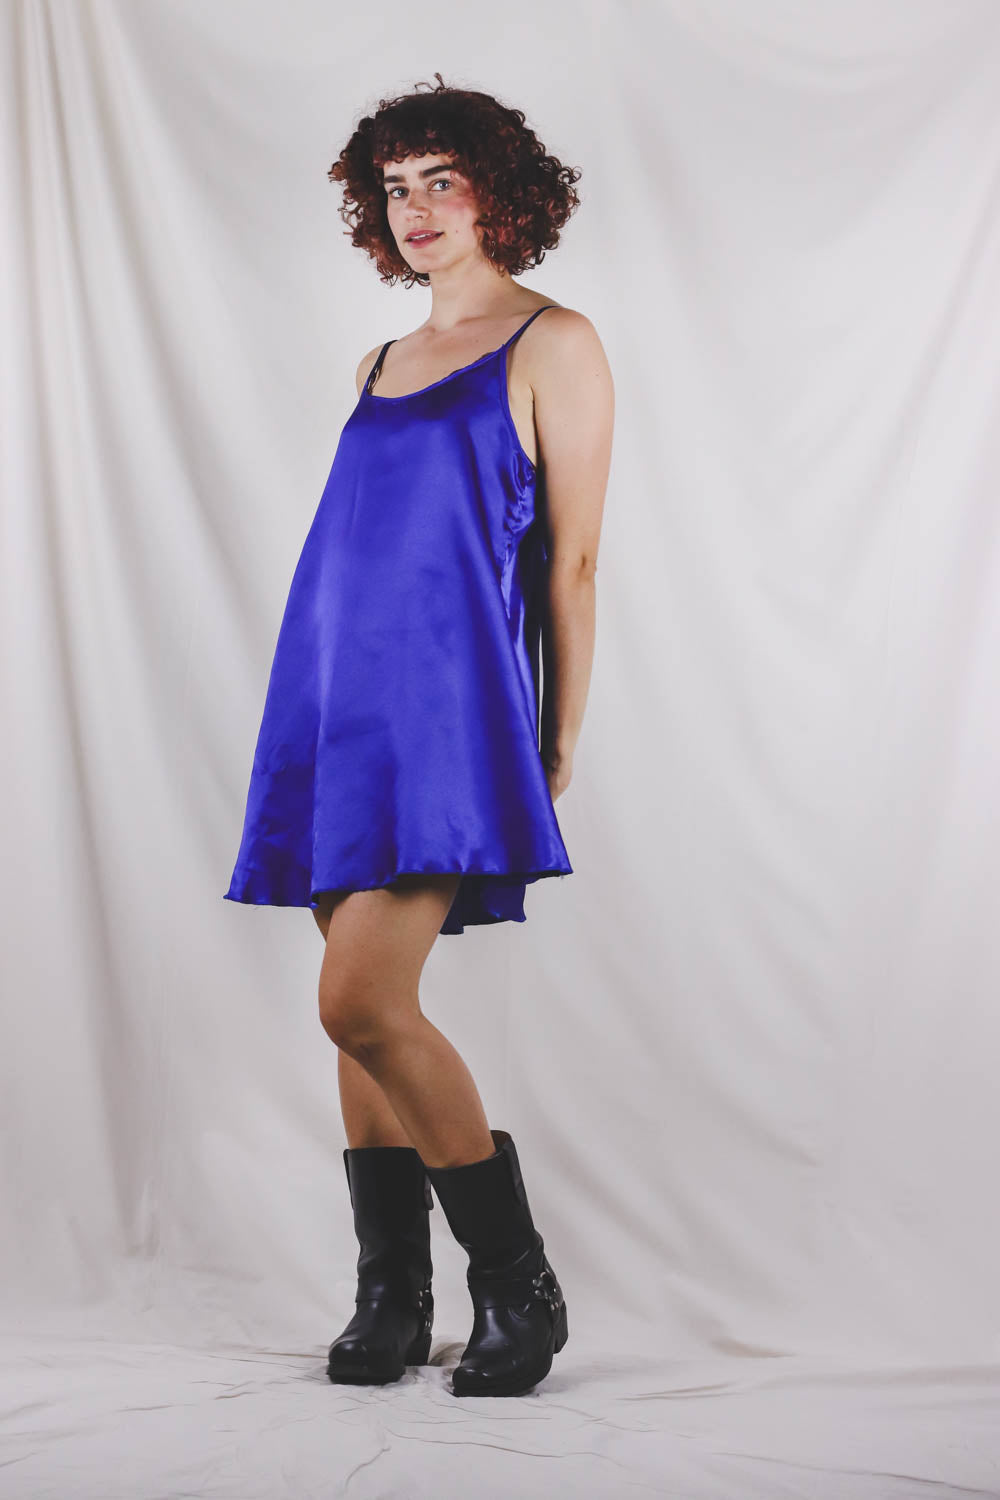 Melida vintage slip dress